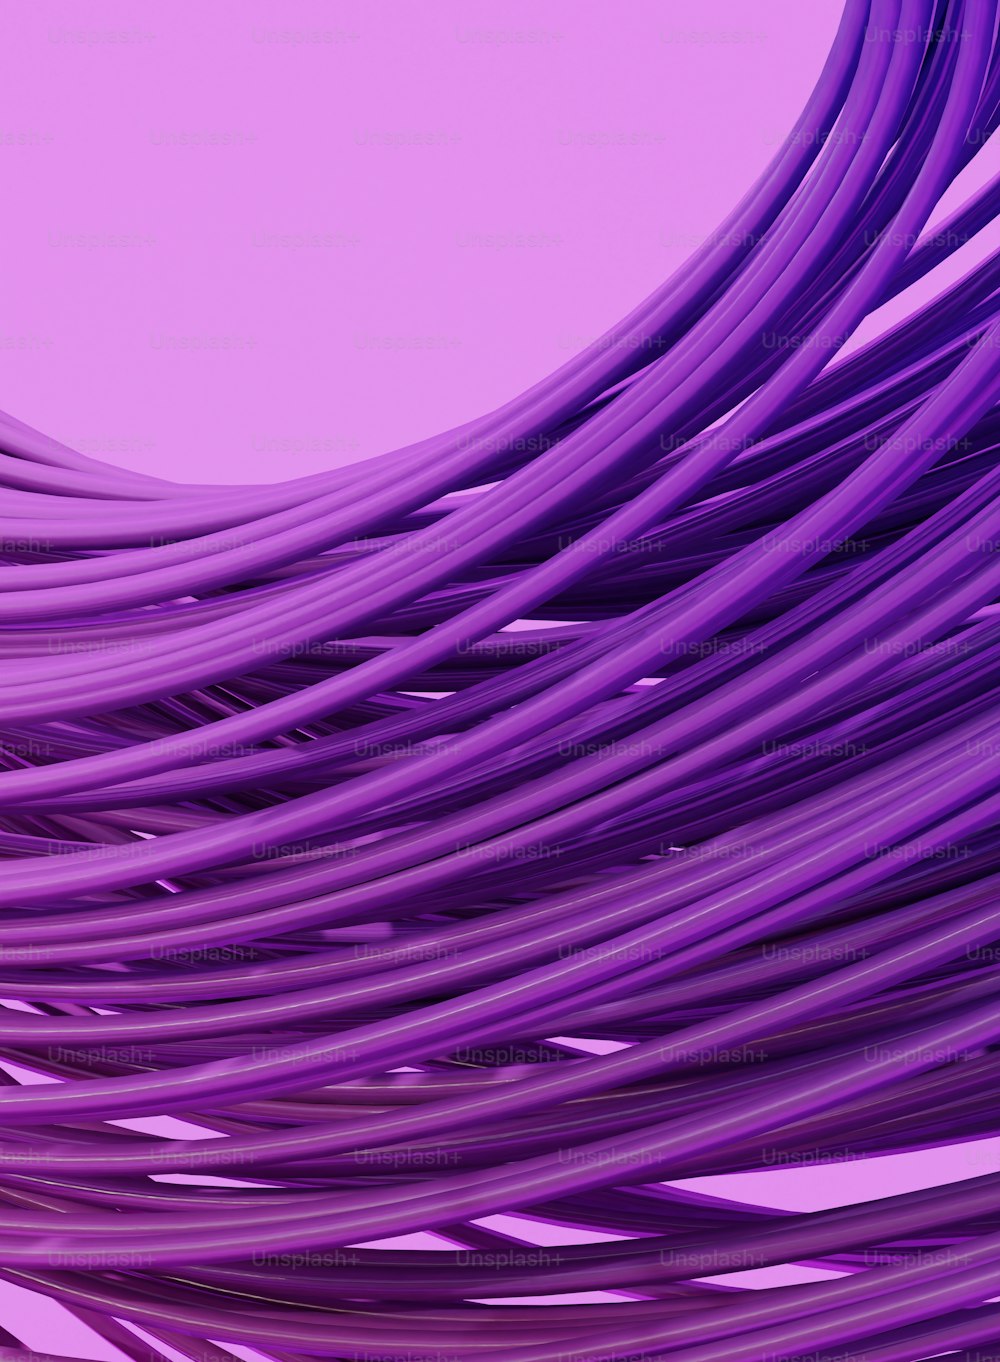 Un mazzo di fili viola su uno sfondo viola